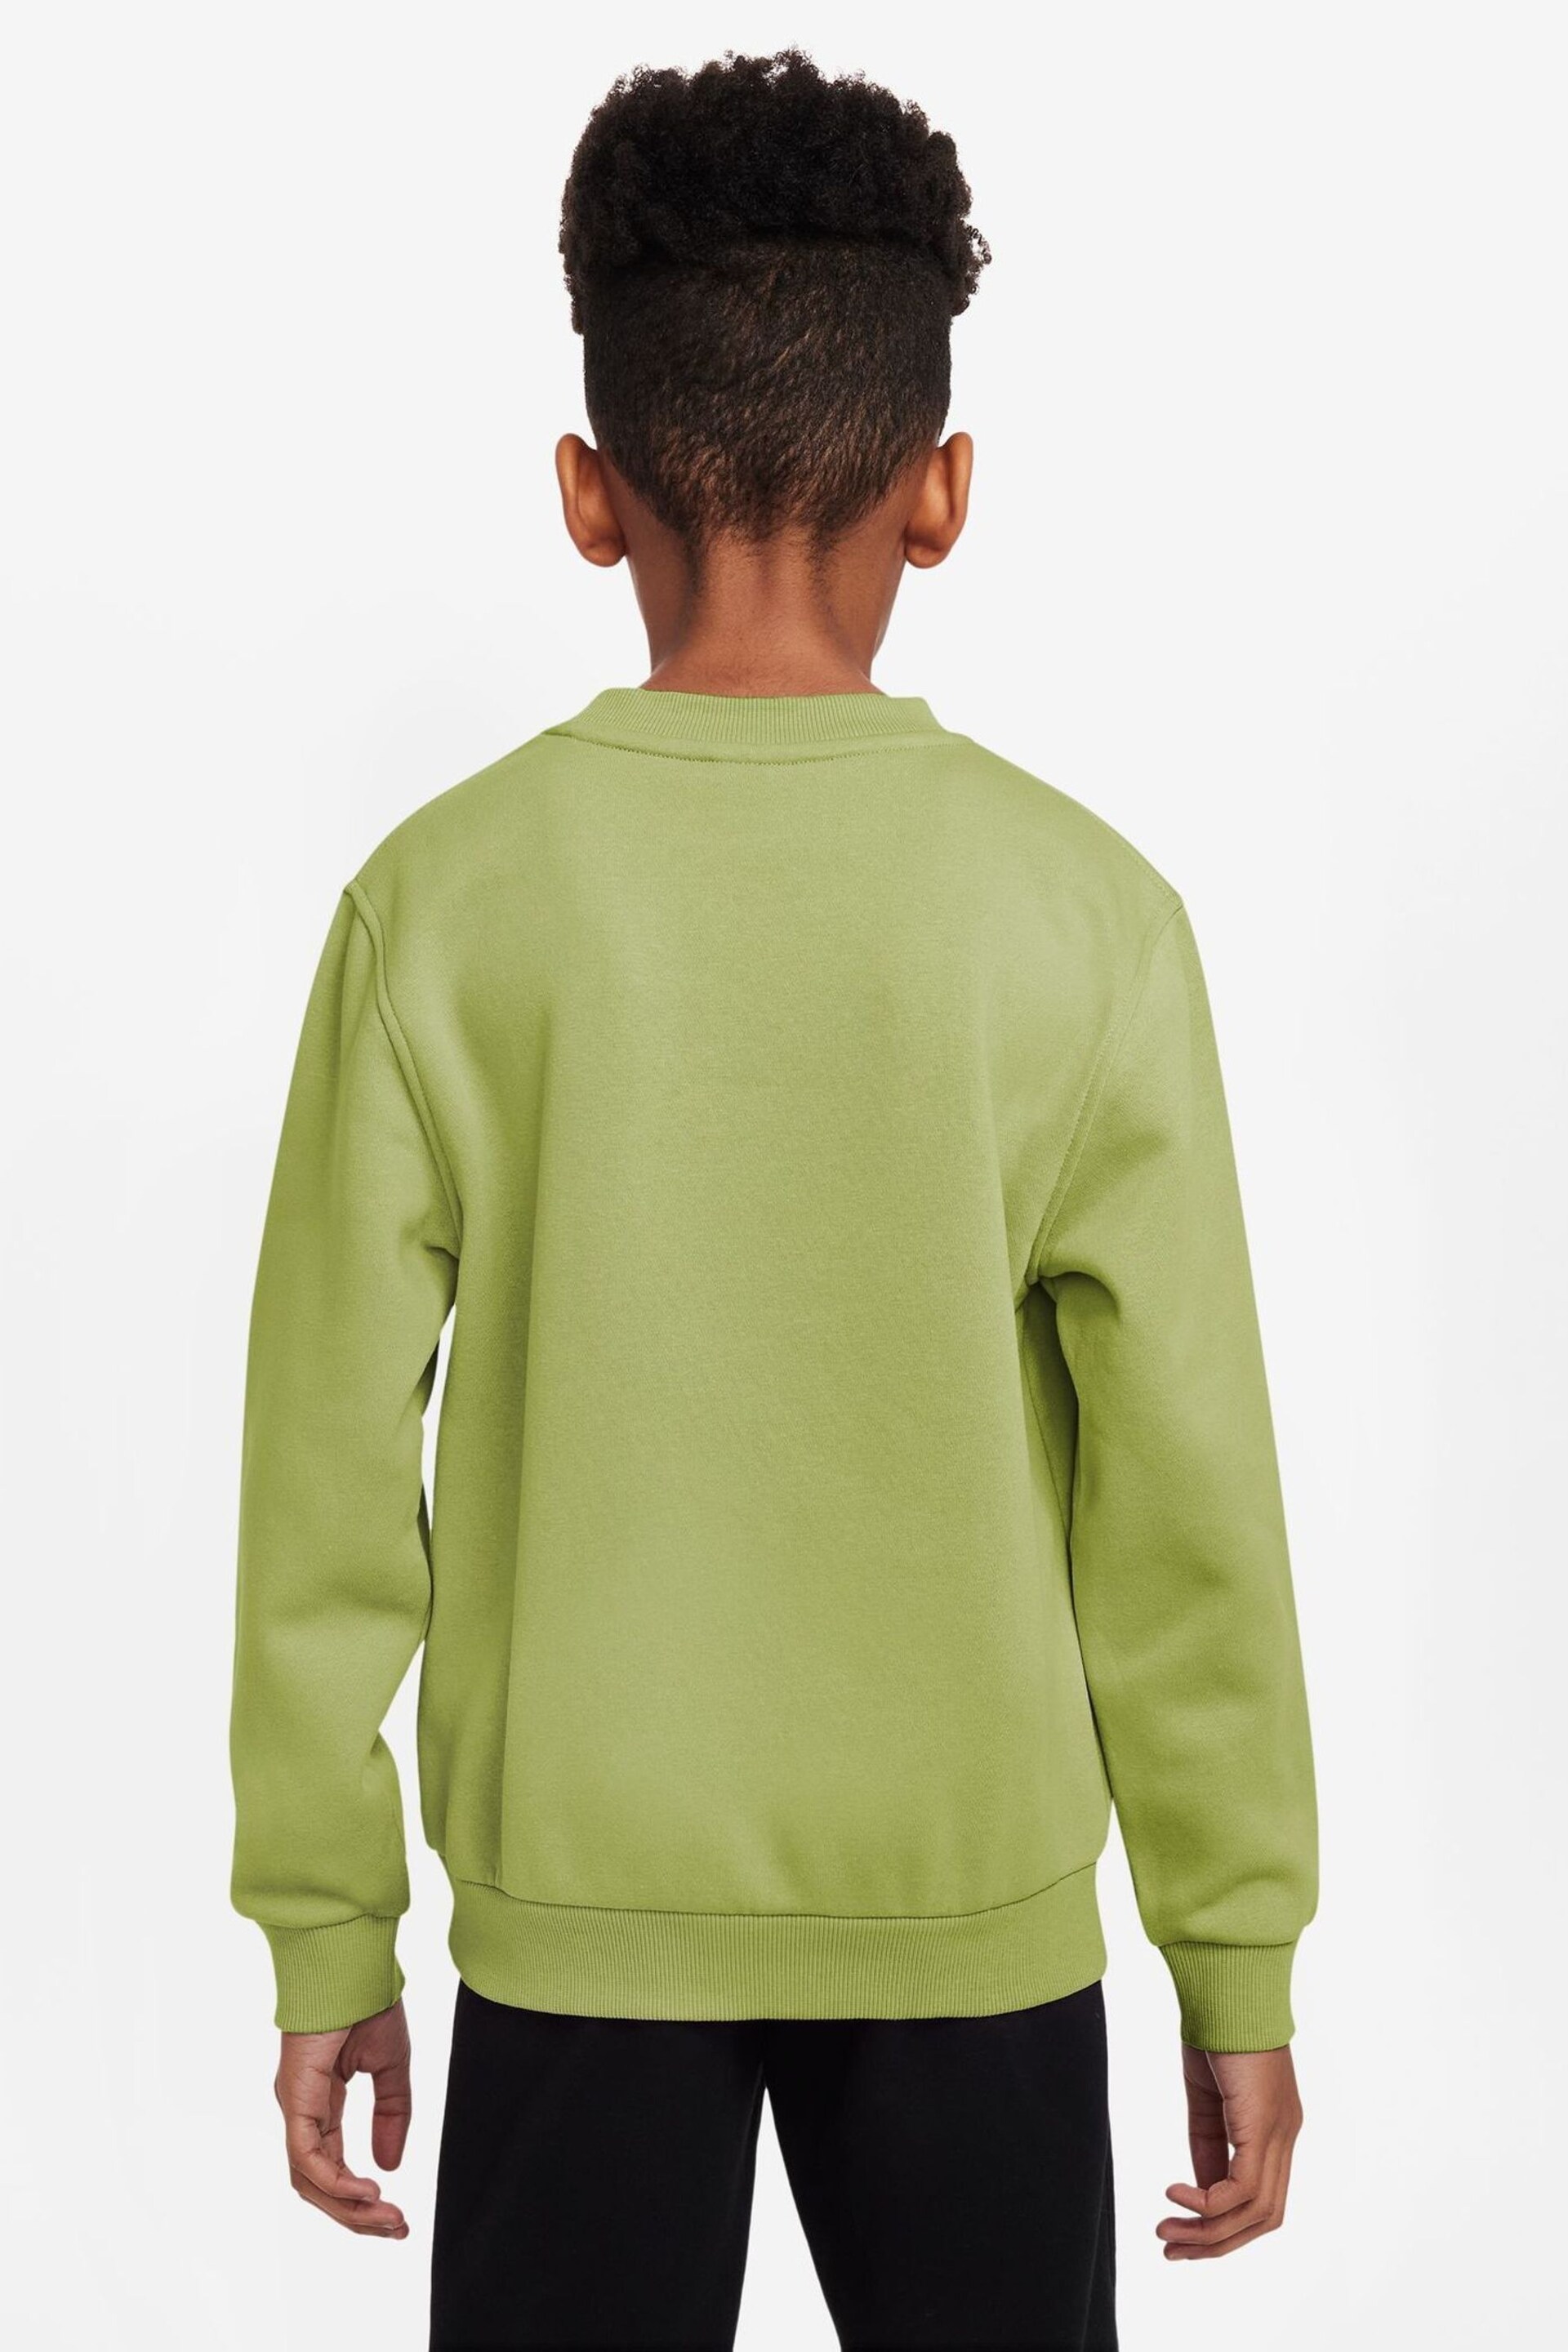 Nike Chartreuse Green Club Fleece Sweatshirt - Image 2 of 7